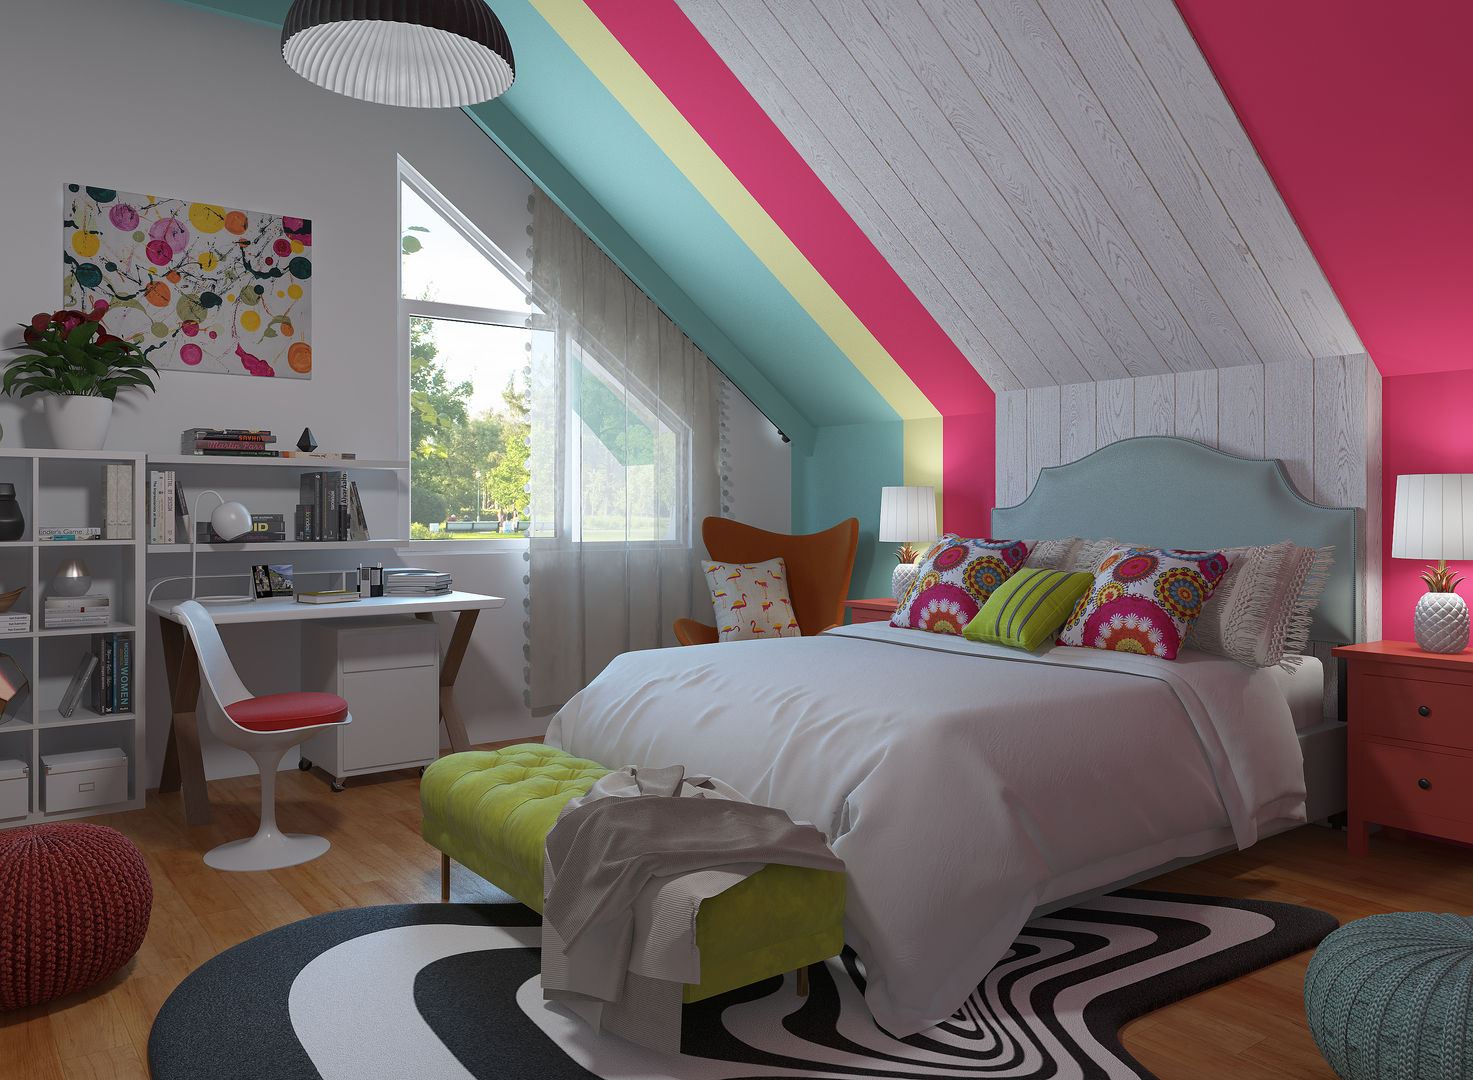 Dormitorio Pop Art - ecléctico homify Habitaciones de estilo ecléctico bedroom,decorate bedroom,how to decorate,pop art style,pop art bedroom,3d design,interior design,rendering,home deco,colourful,customized designs